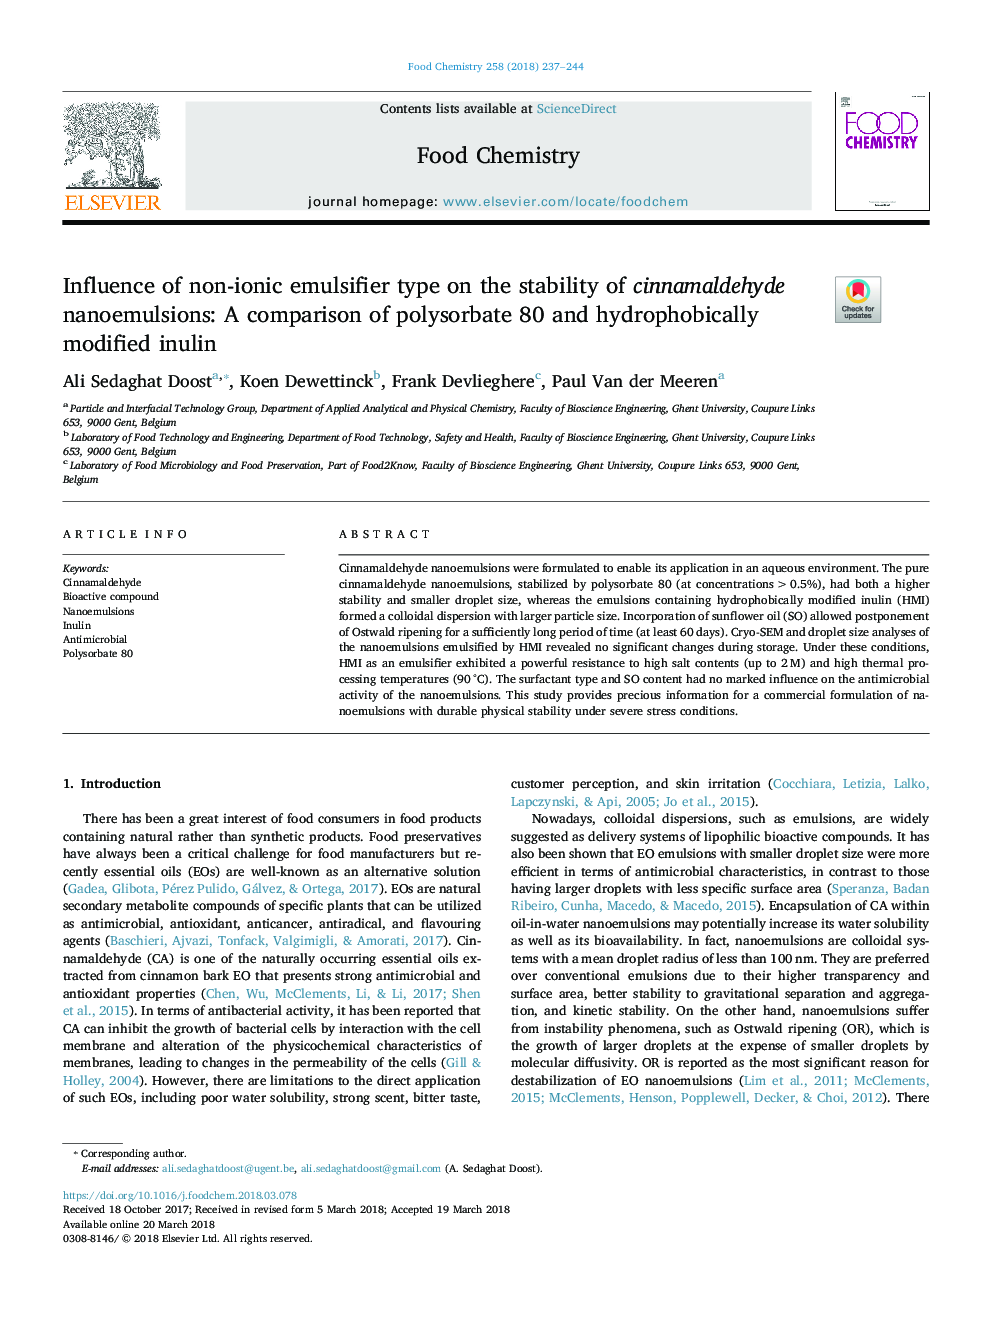 تأثیر نوع امولسیفایر غیر یونی بر پایداری نانو امولسیونهای سینامالدئید: مقایسۀ پلی واربات 80 و انولین اصلاح شده با هیدروفوب 